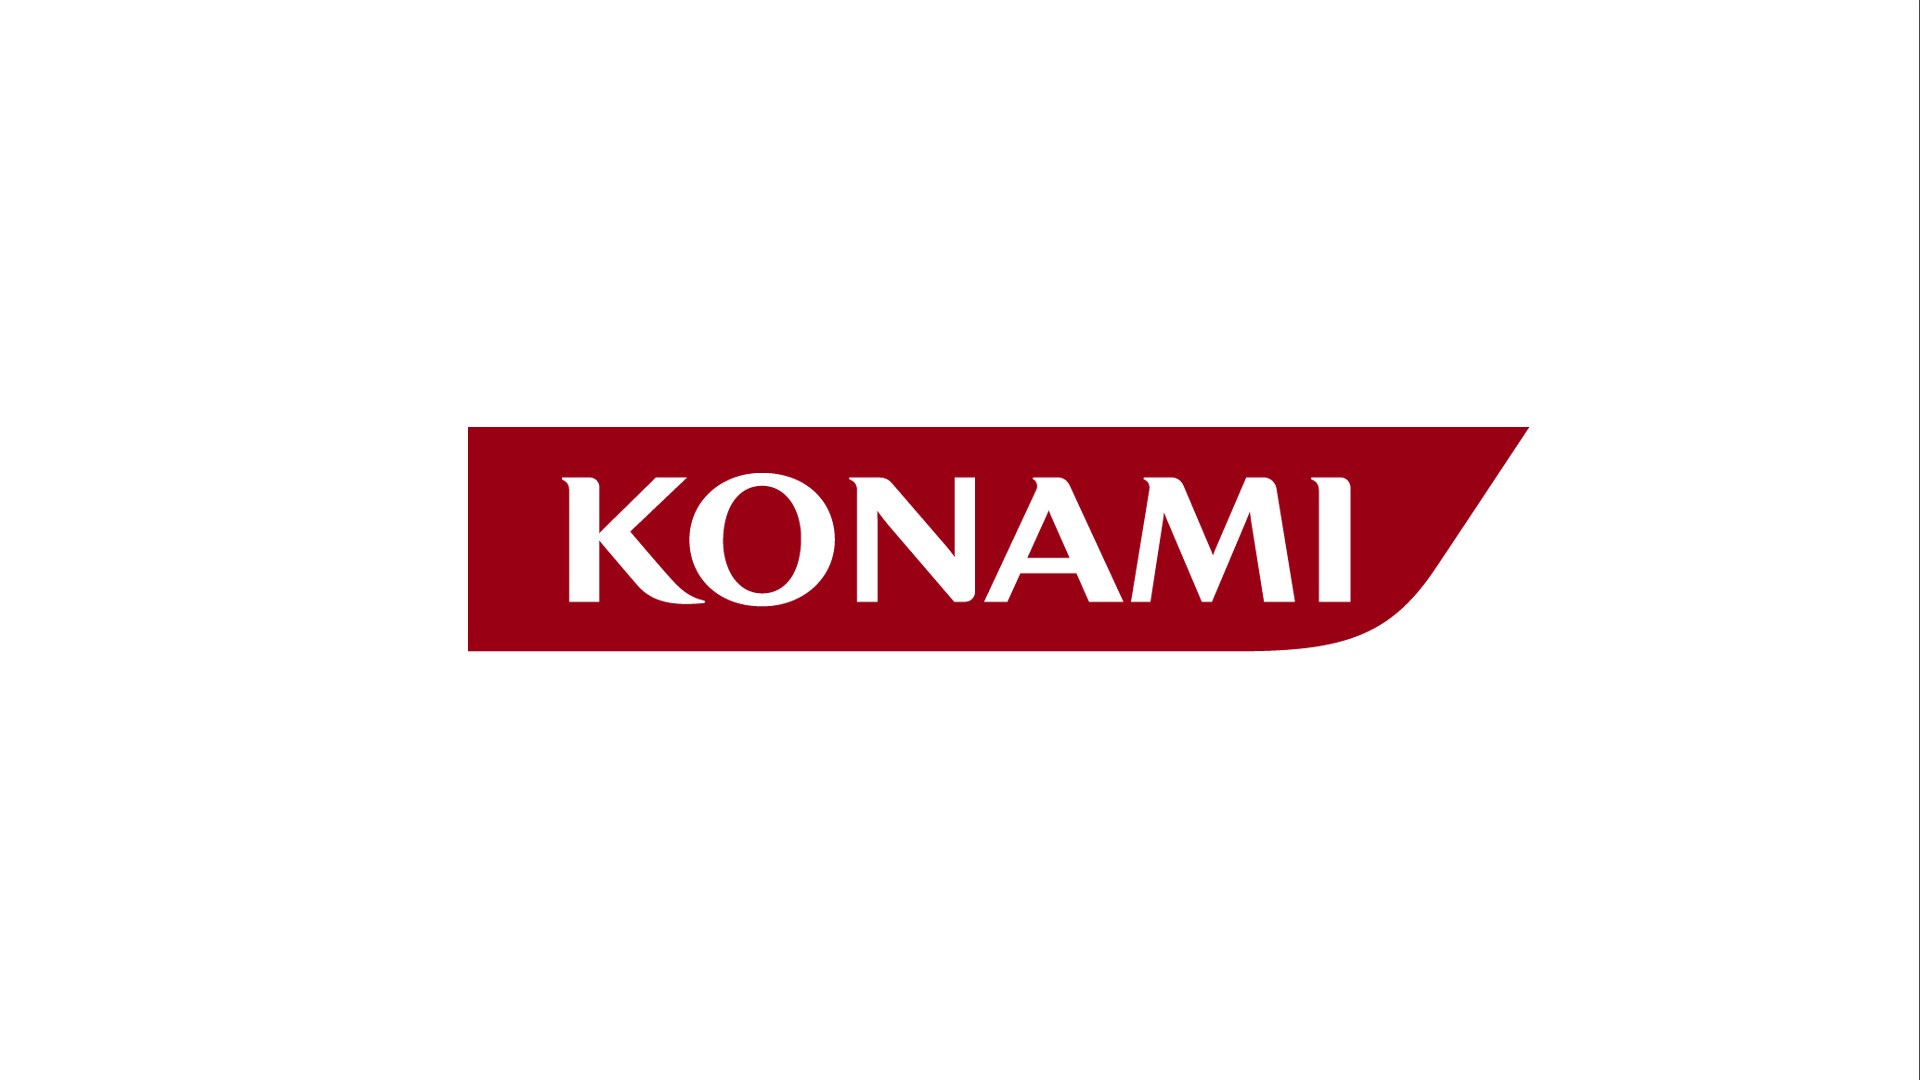 Konami Pre-E3 Show Tonight!